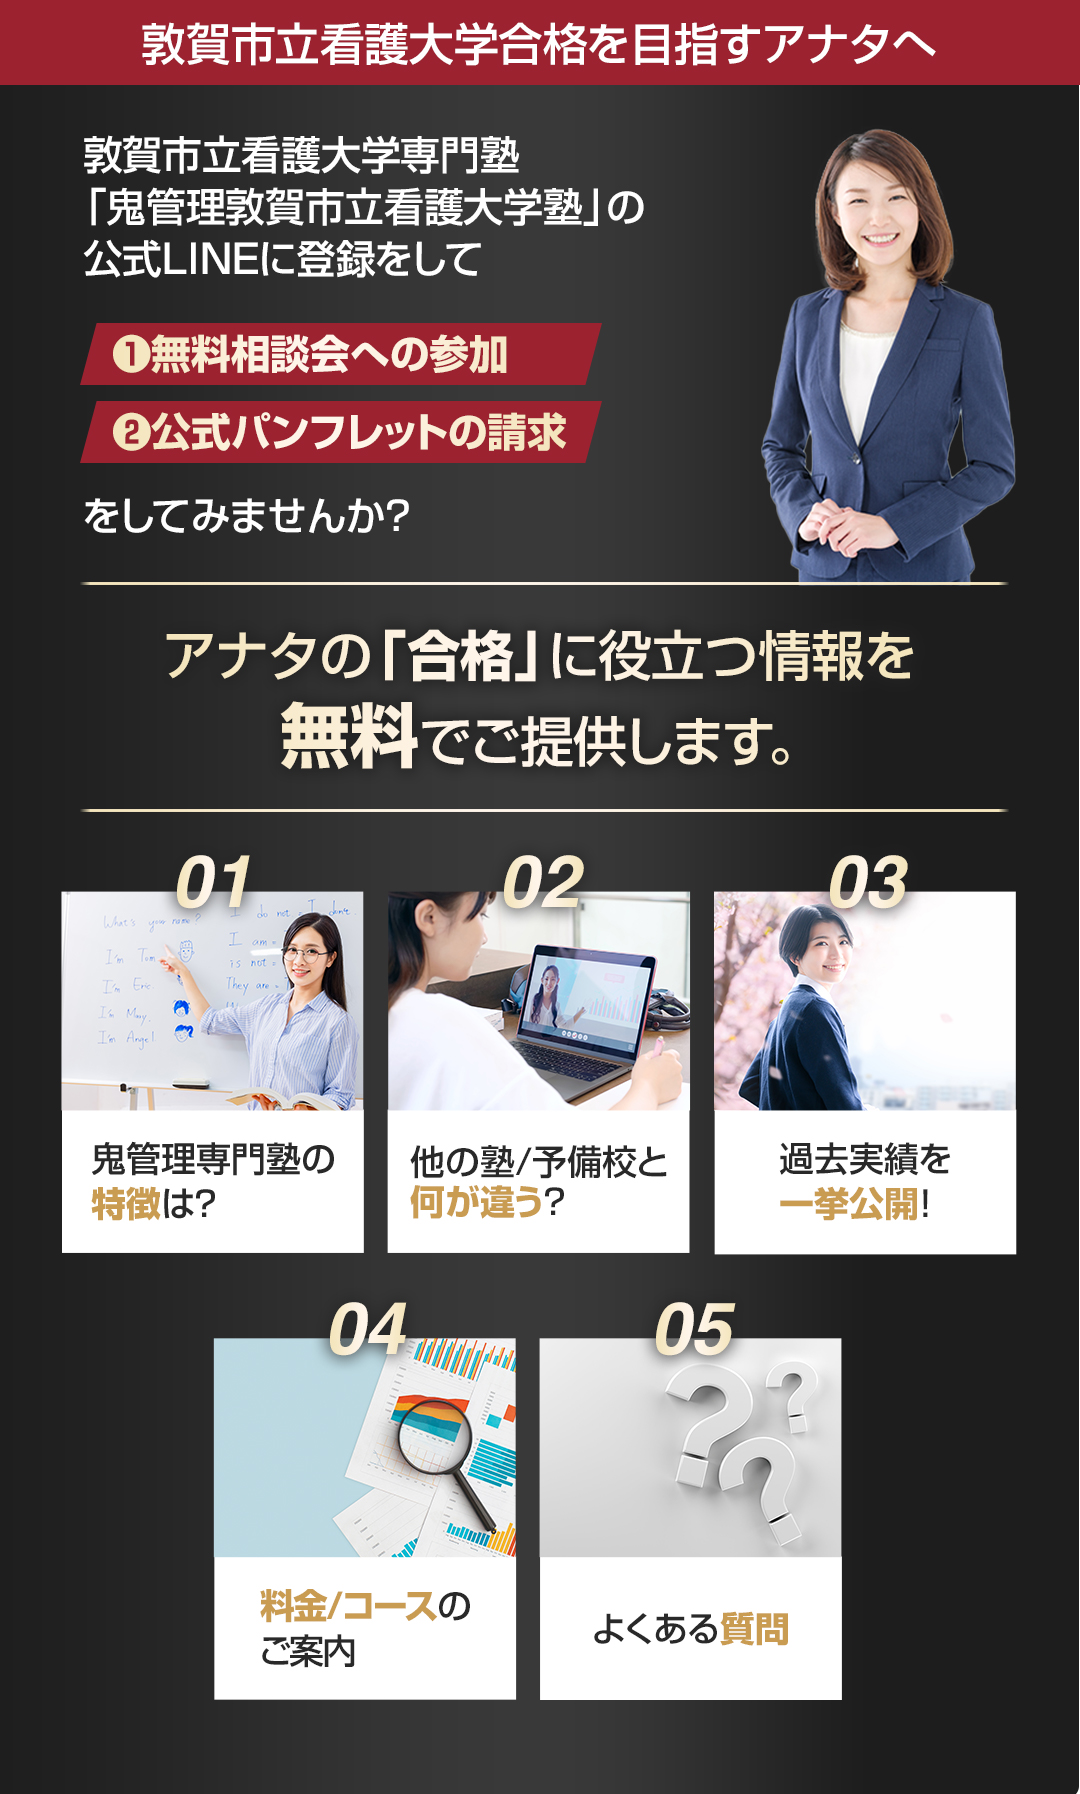 敦賀市立看護大学を目指すアナタへ合格に役立つ情報を無料でご提供します